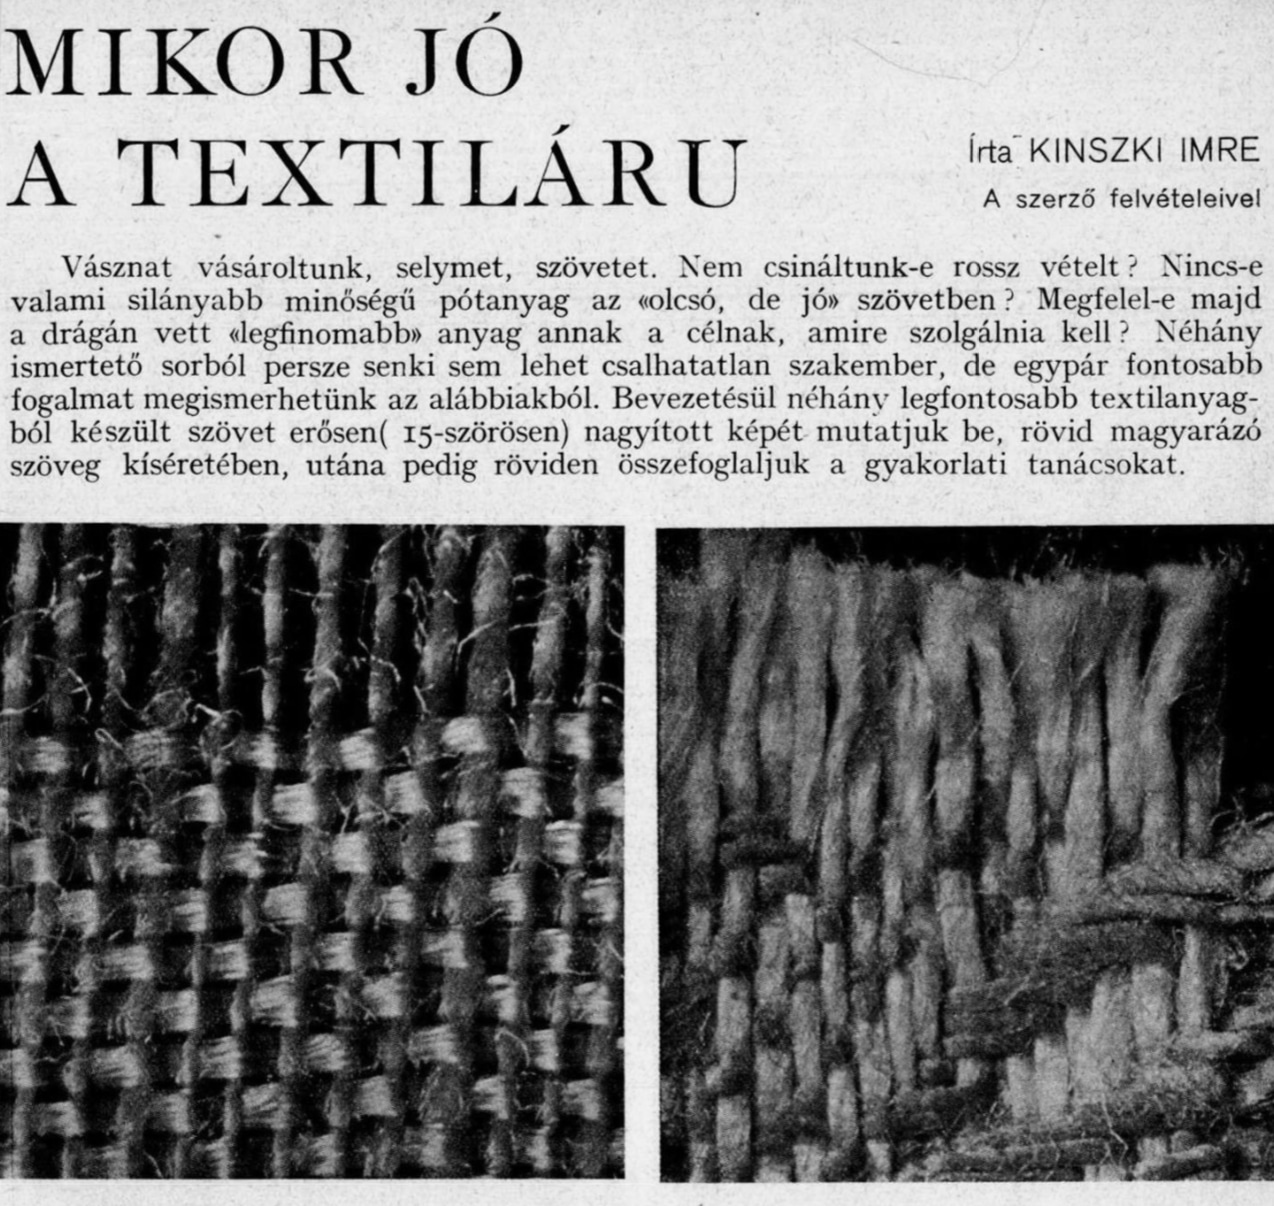 5a. Imre Kinszki, <em>Mikor jó a textiláru</em> (« Qu’est-ce qu’un bon tissu »), p. 1 (détail), 1935 © FSZEK